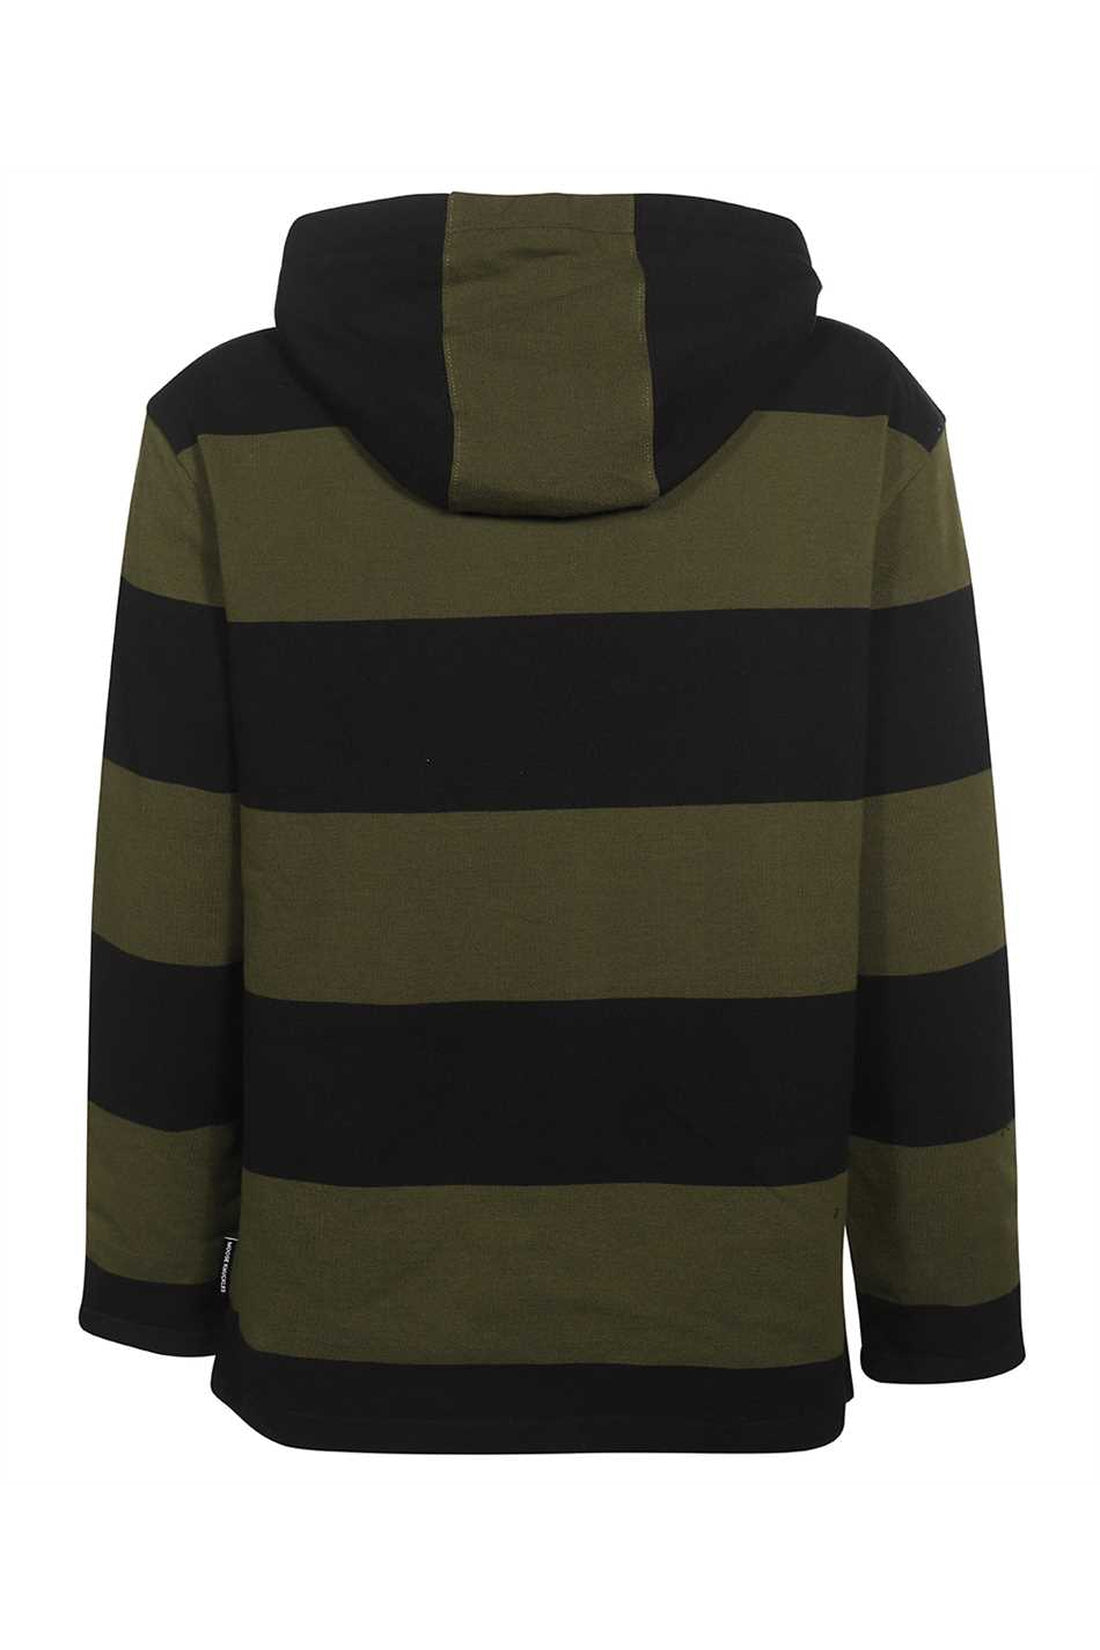 Moose Knuckles-OUTLET-SALE-Striped cotton sweatshirt-ARCHIVIST